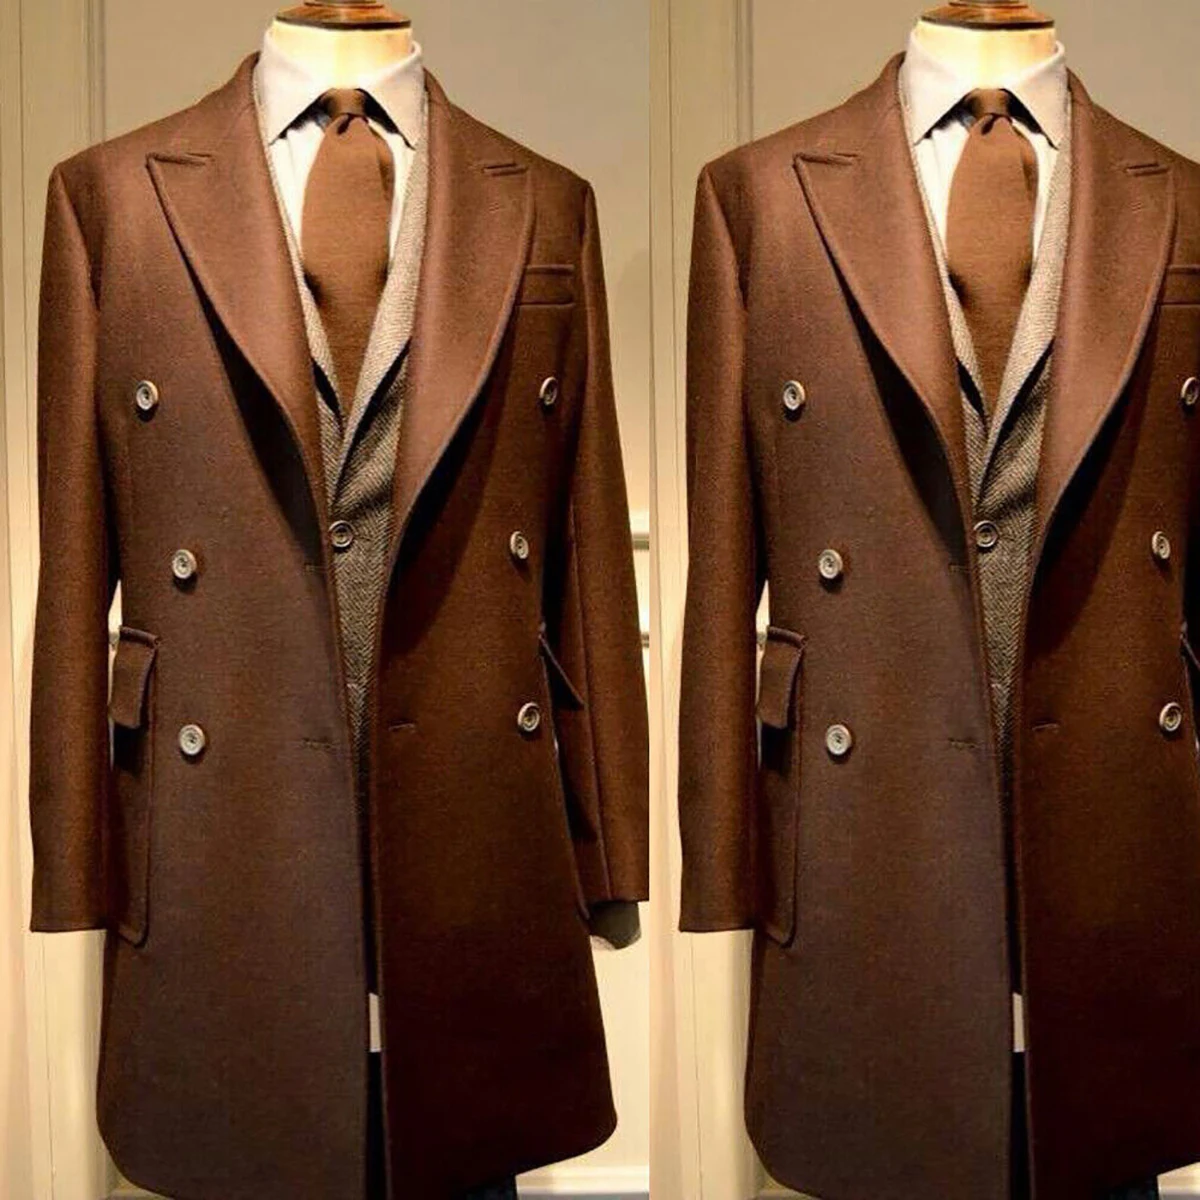 

Coat Men Suit Peaked Lapel Retro Tweed Warm Coats Double Breasted OverCoat Tailor